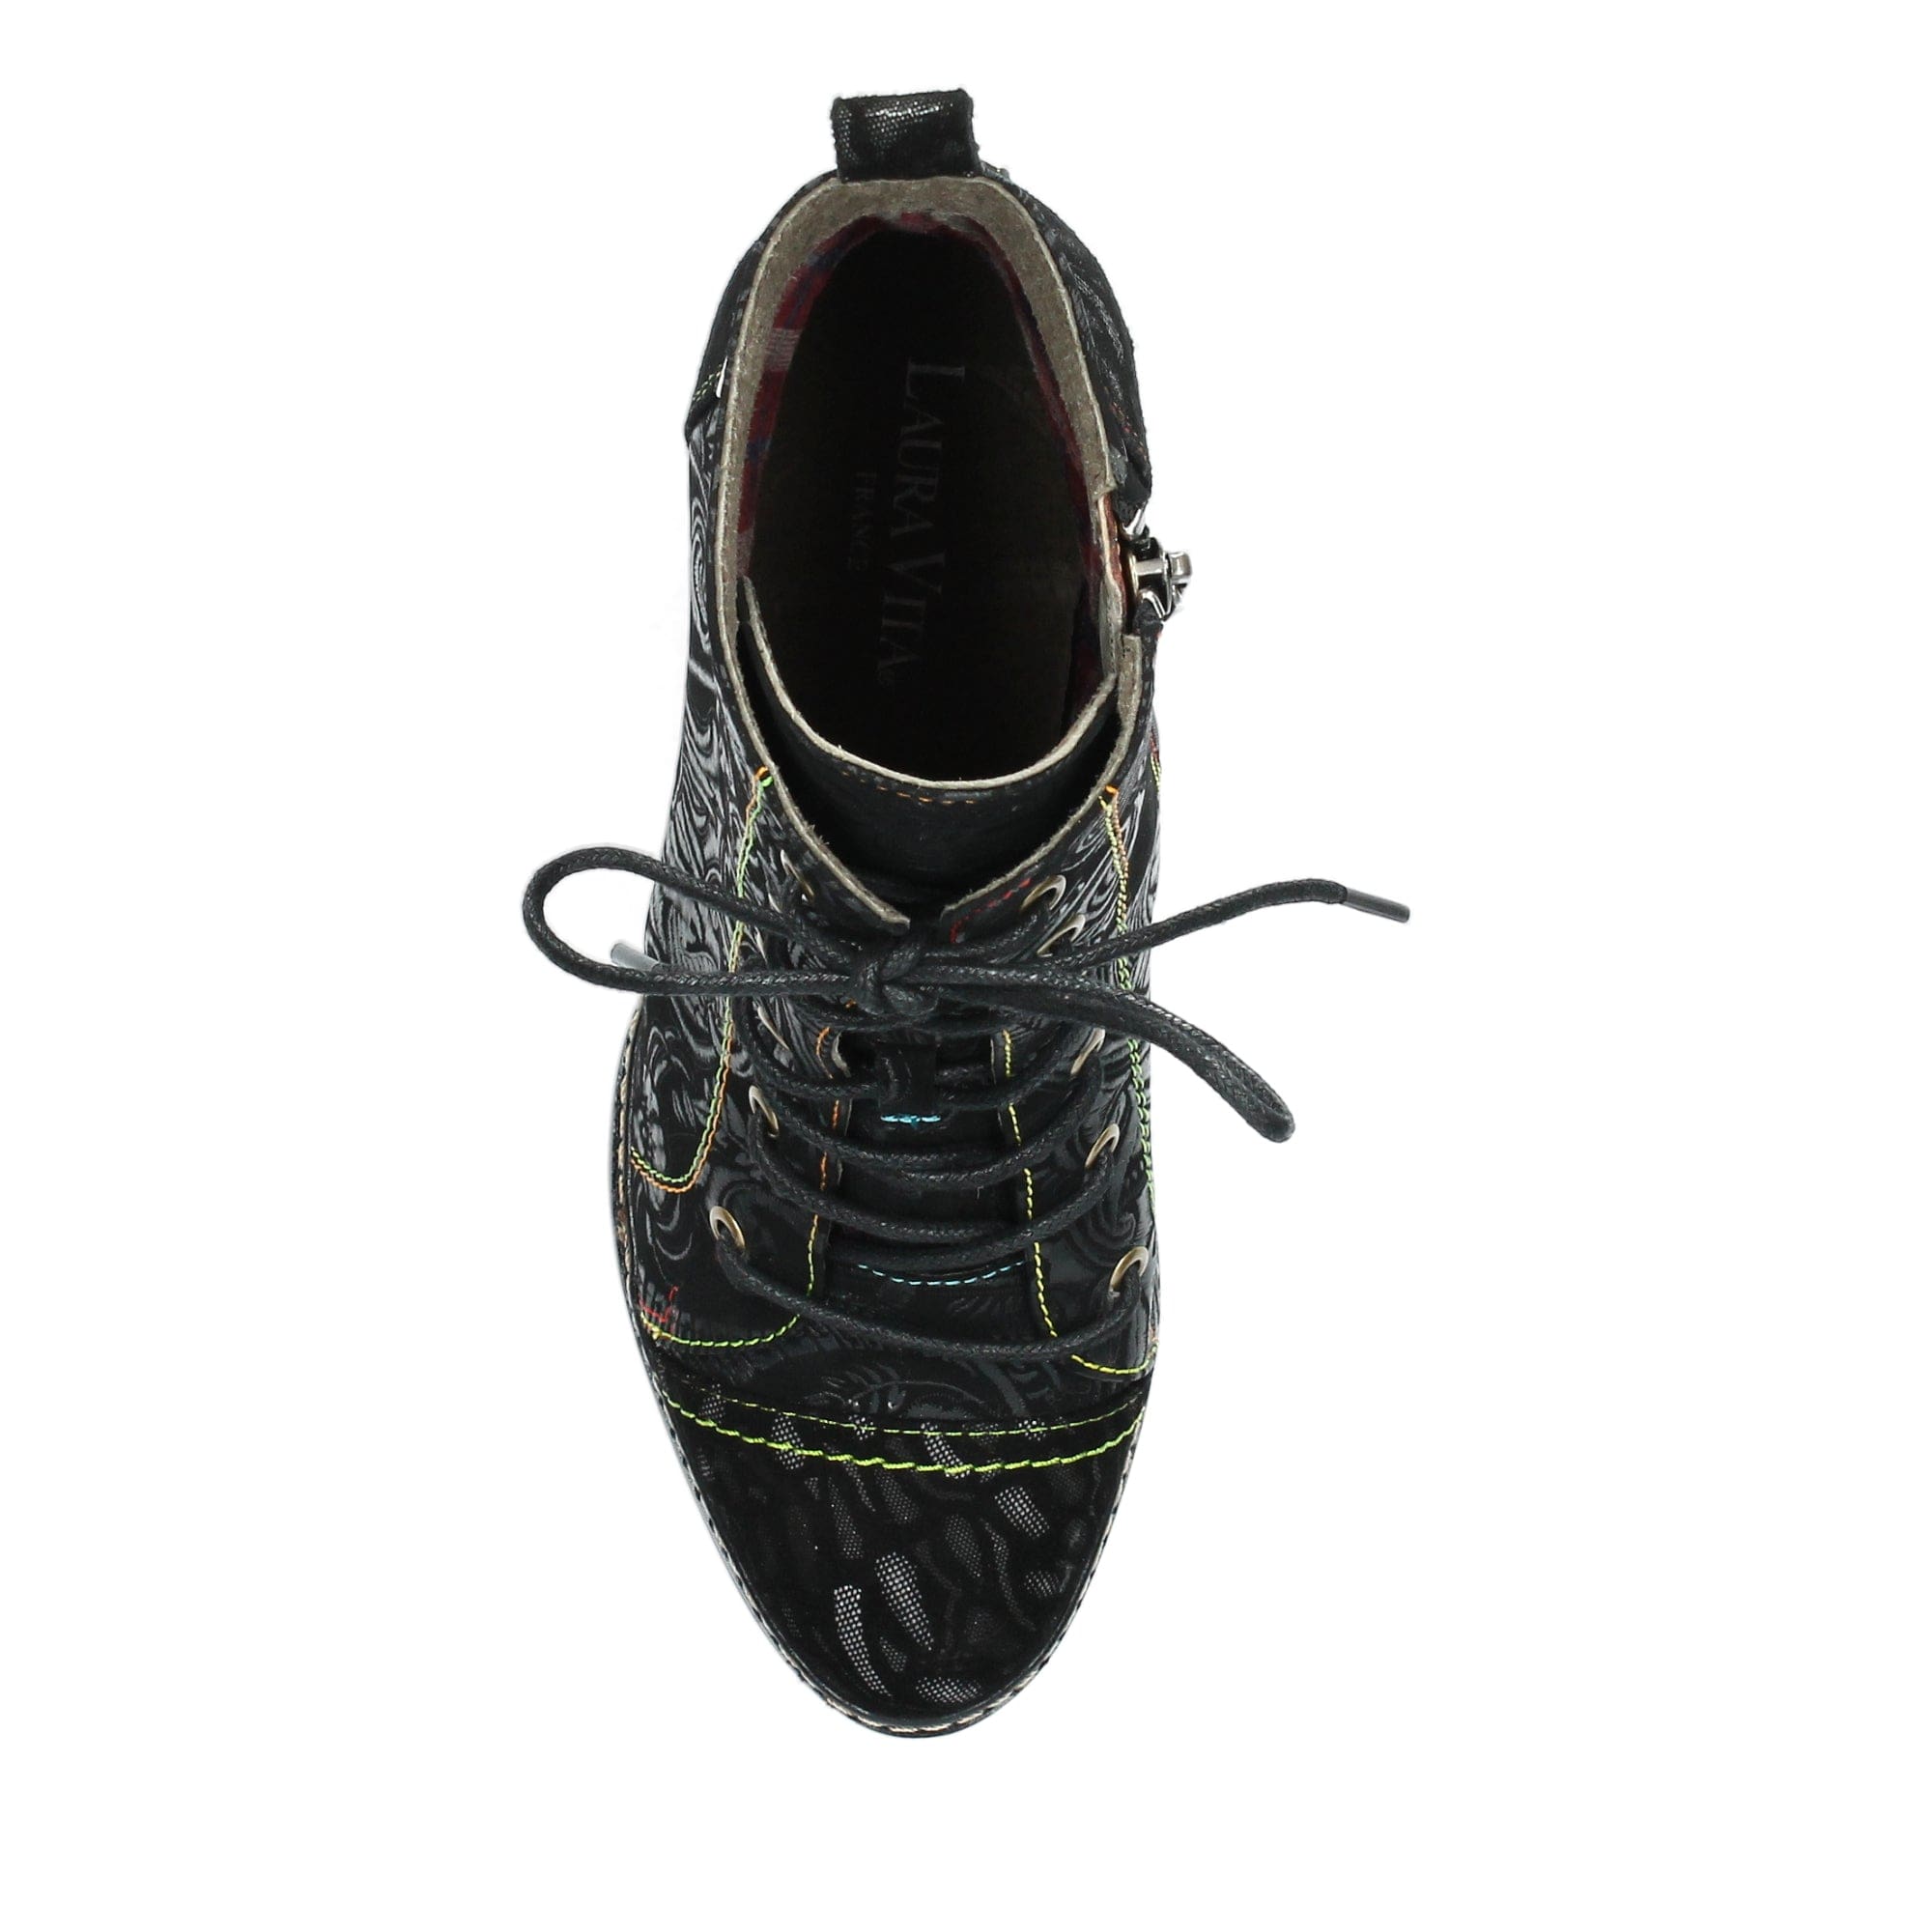 Shoe AGCATHEO 131 - Boots